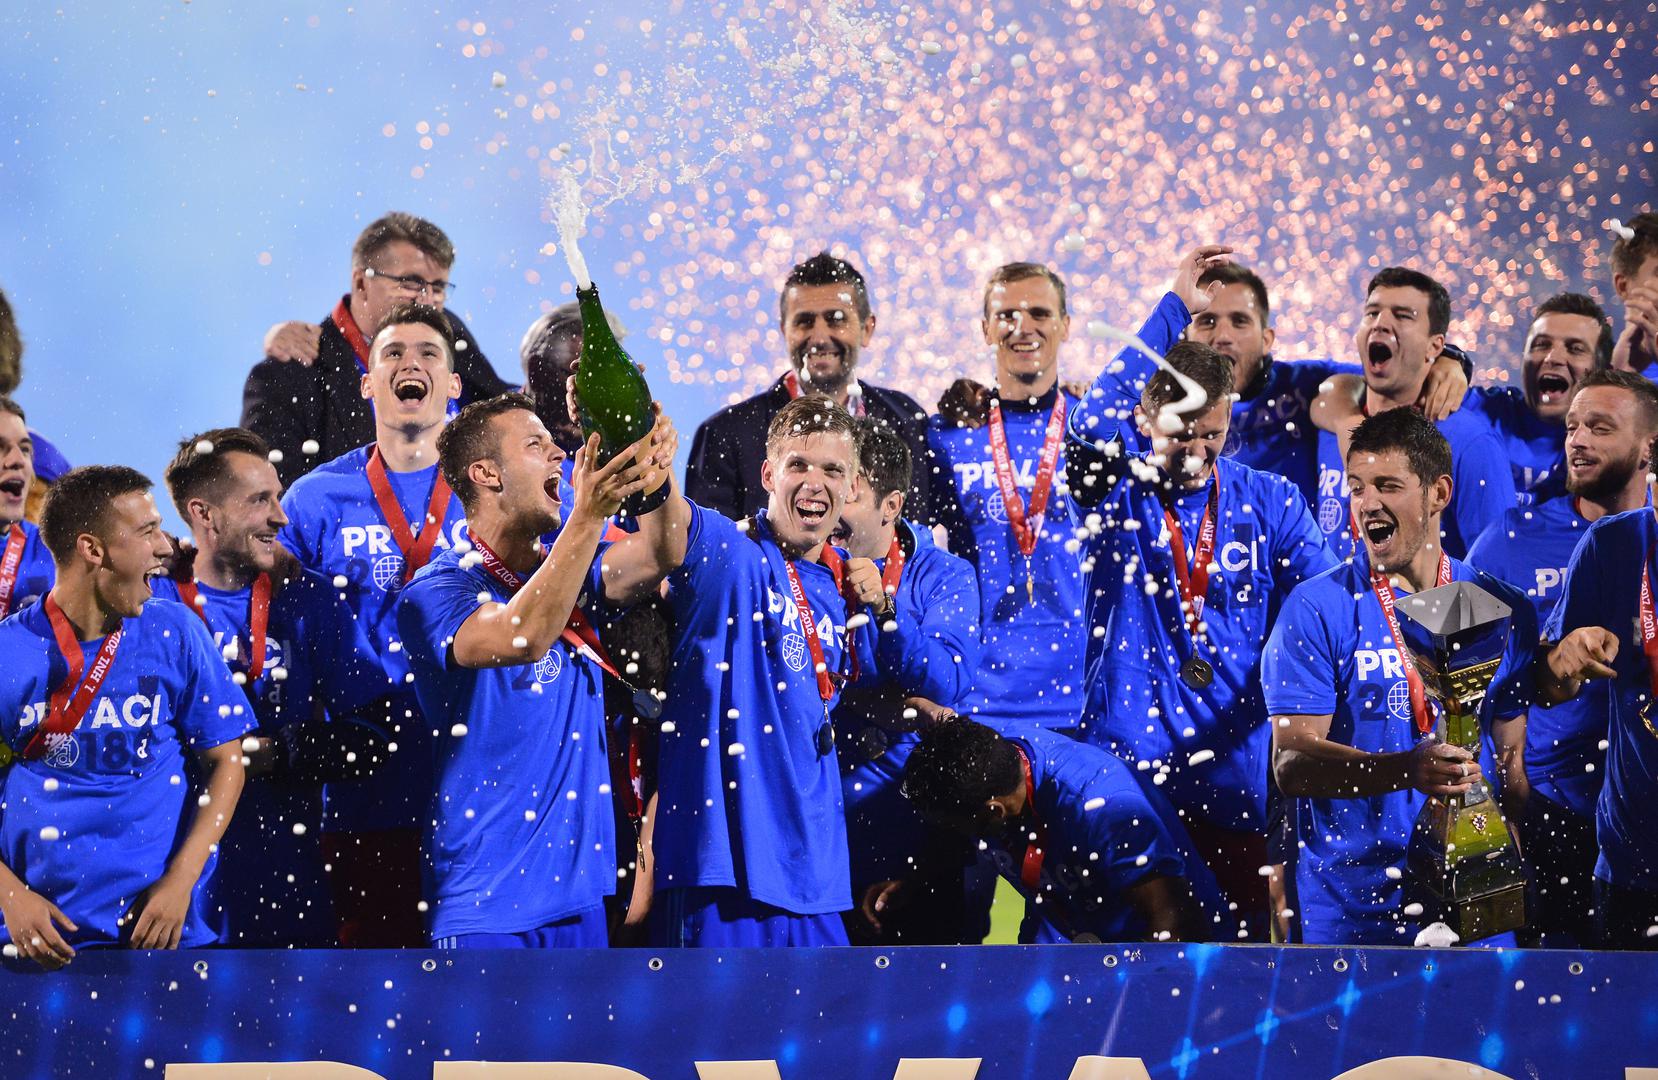 Plavi su uz vatromet i pjenušac proslavili 19. naslov prvaka od hrvatske samostalnost. Ali nema vremena za slavlje, jer sezona još nije završila